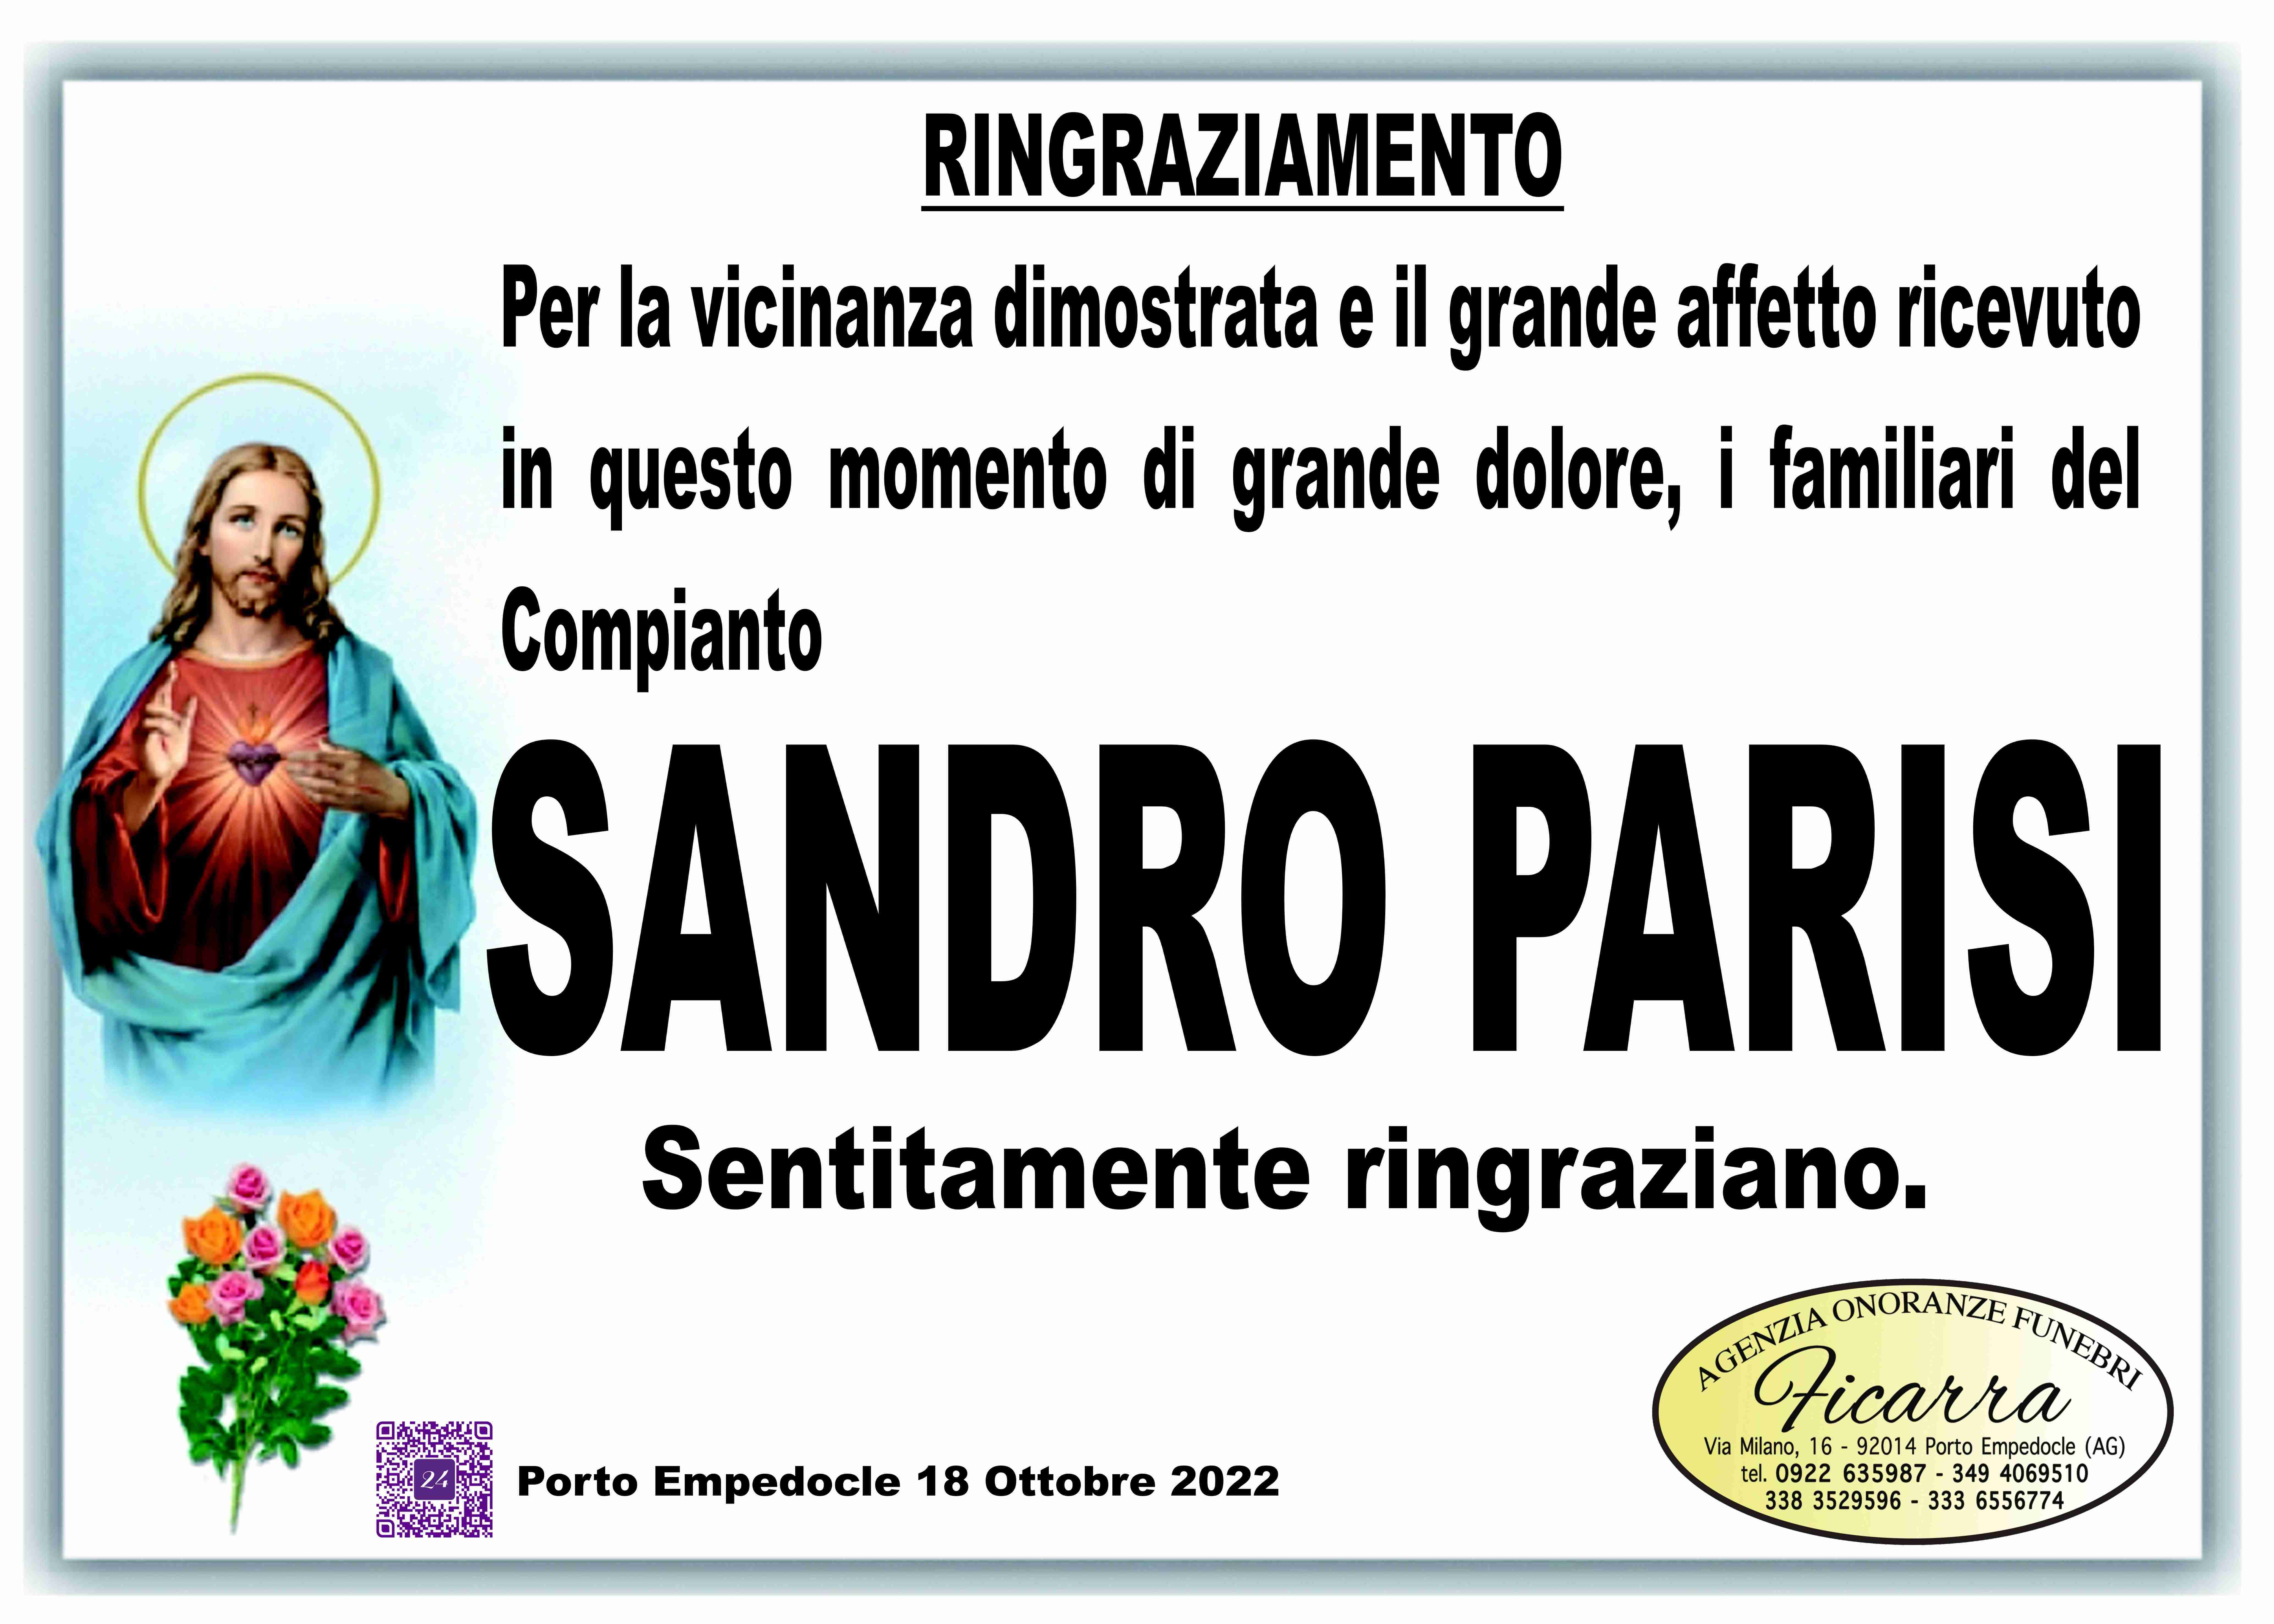 Sandro Parisi